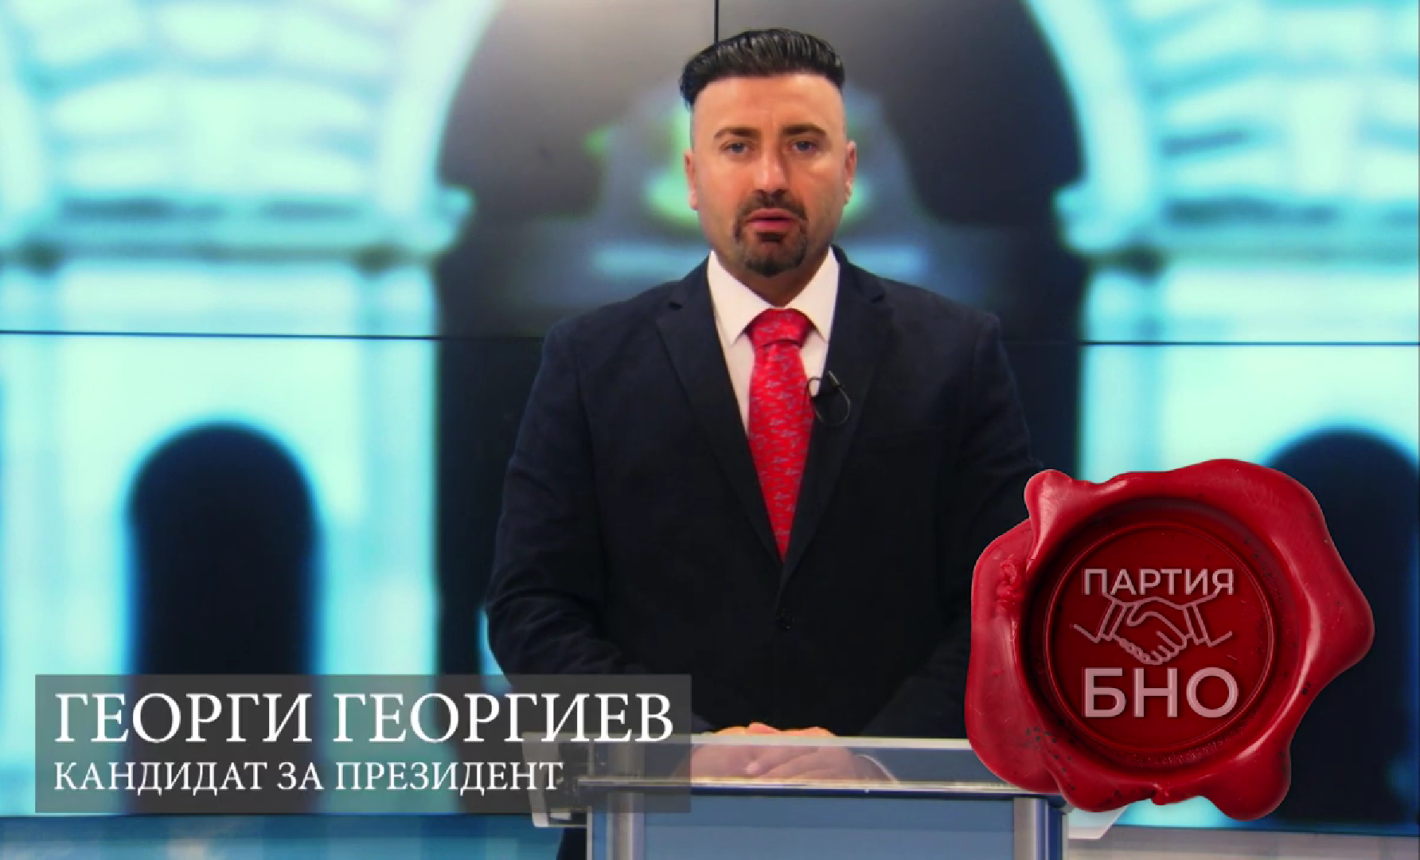 Георги Георгиев кандидат за президент от БНО обявява служебното правителство за противоконституционно